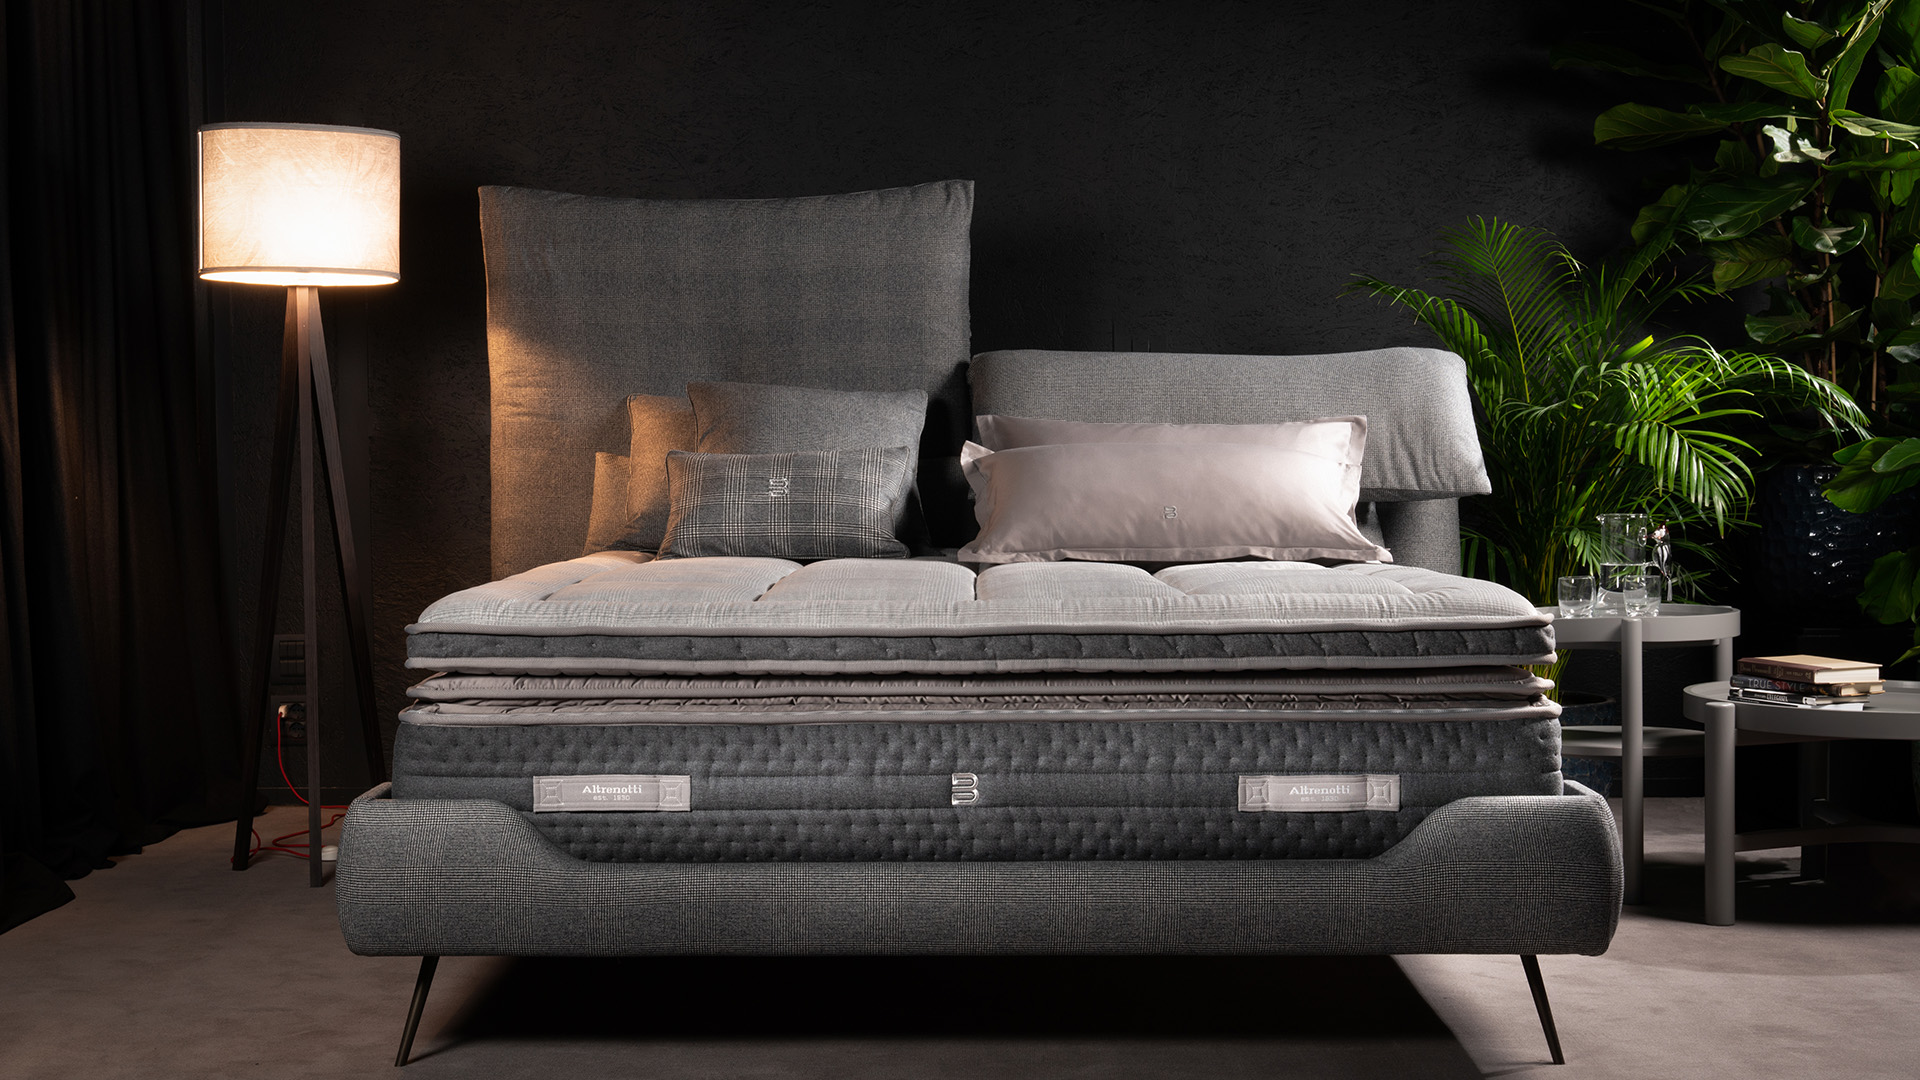 Altrenotti mattress 義大利進口床墊 義大利進口床架 頂級訂製床墊 床墊寢具